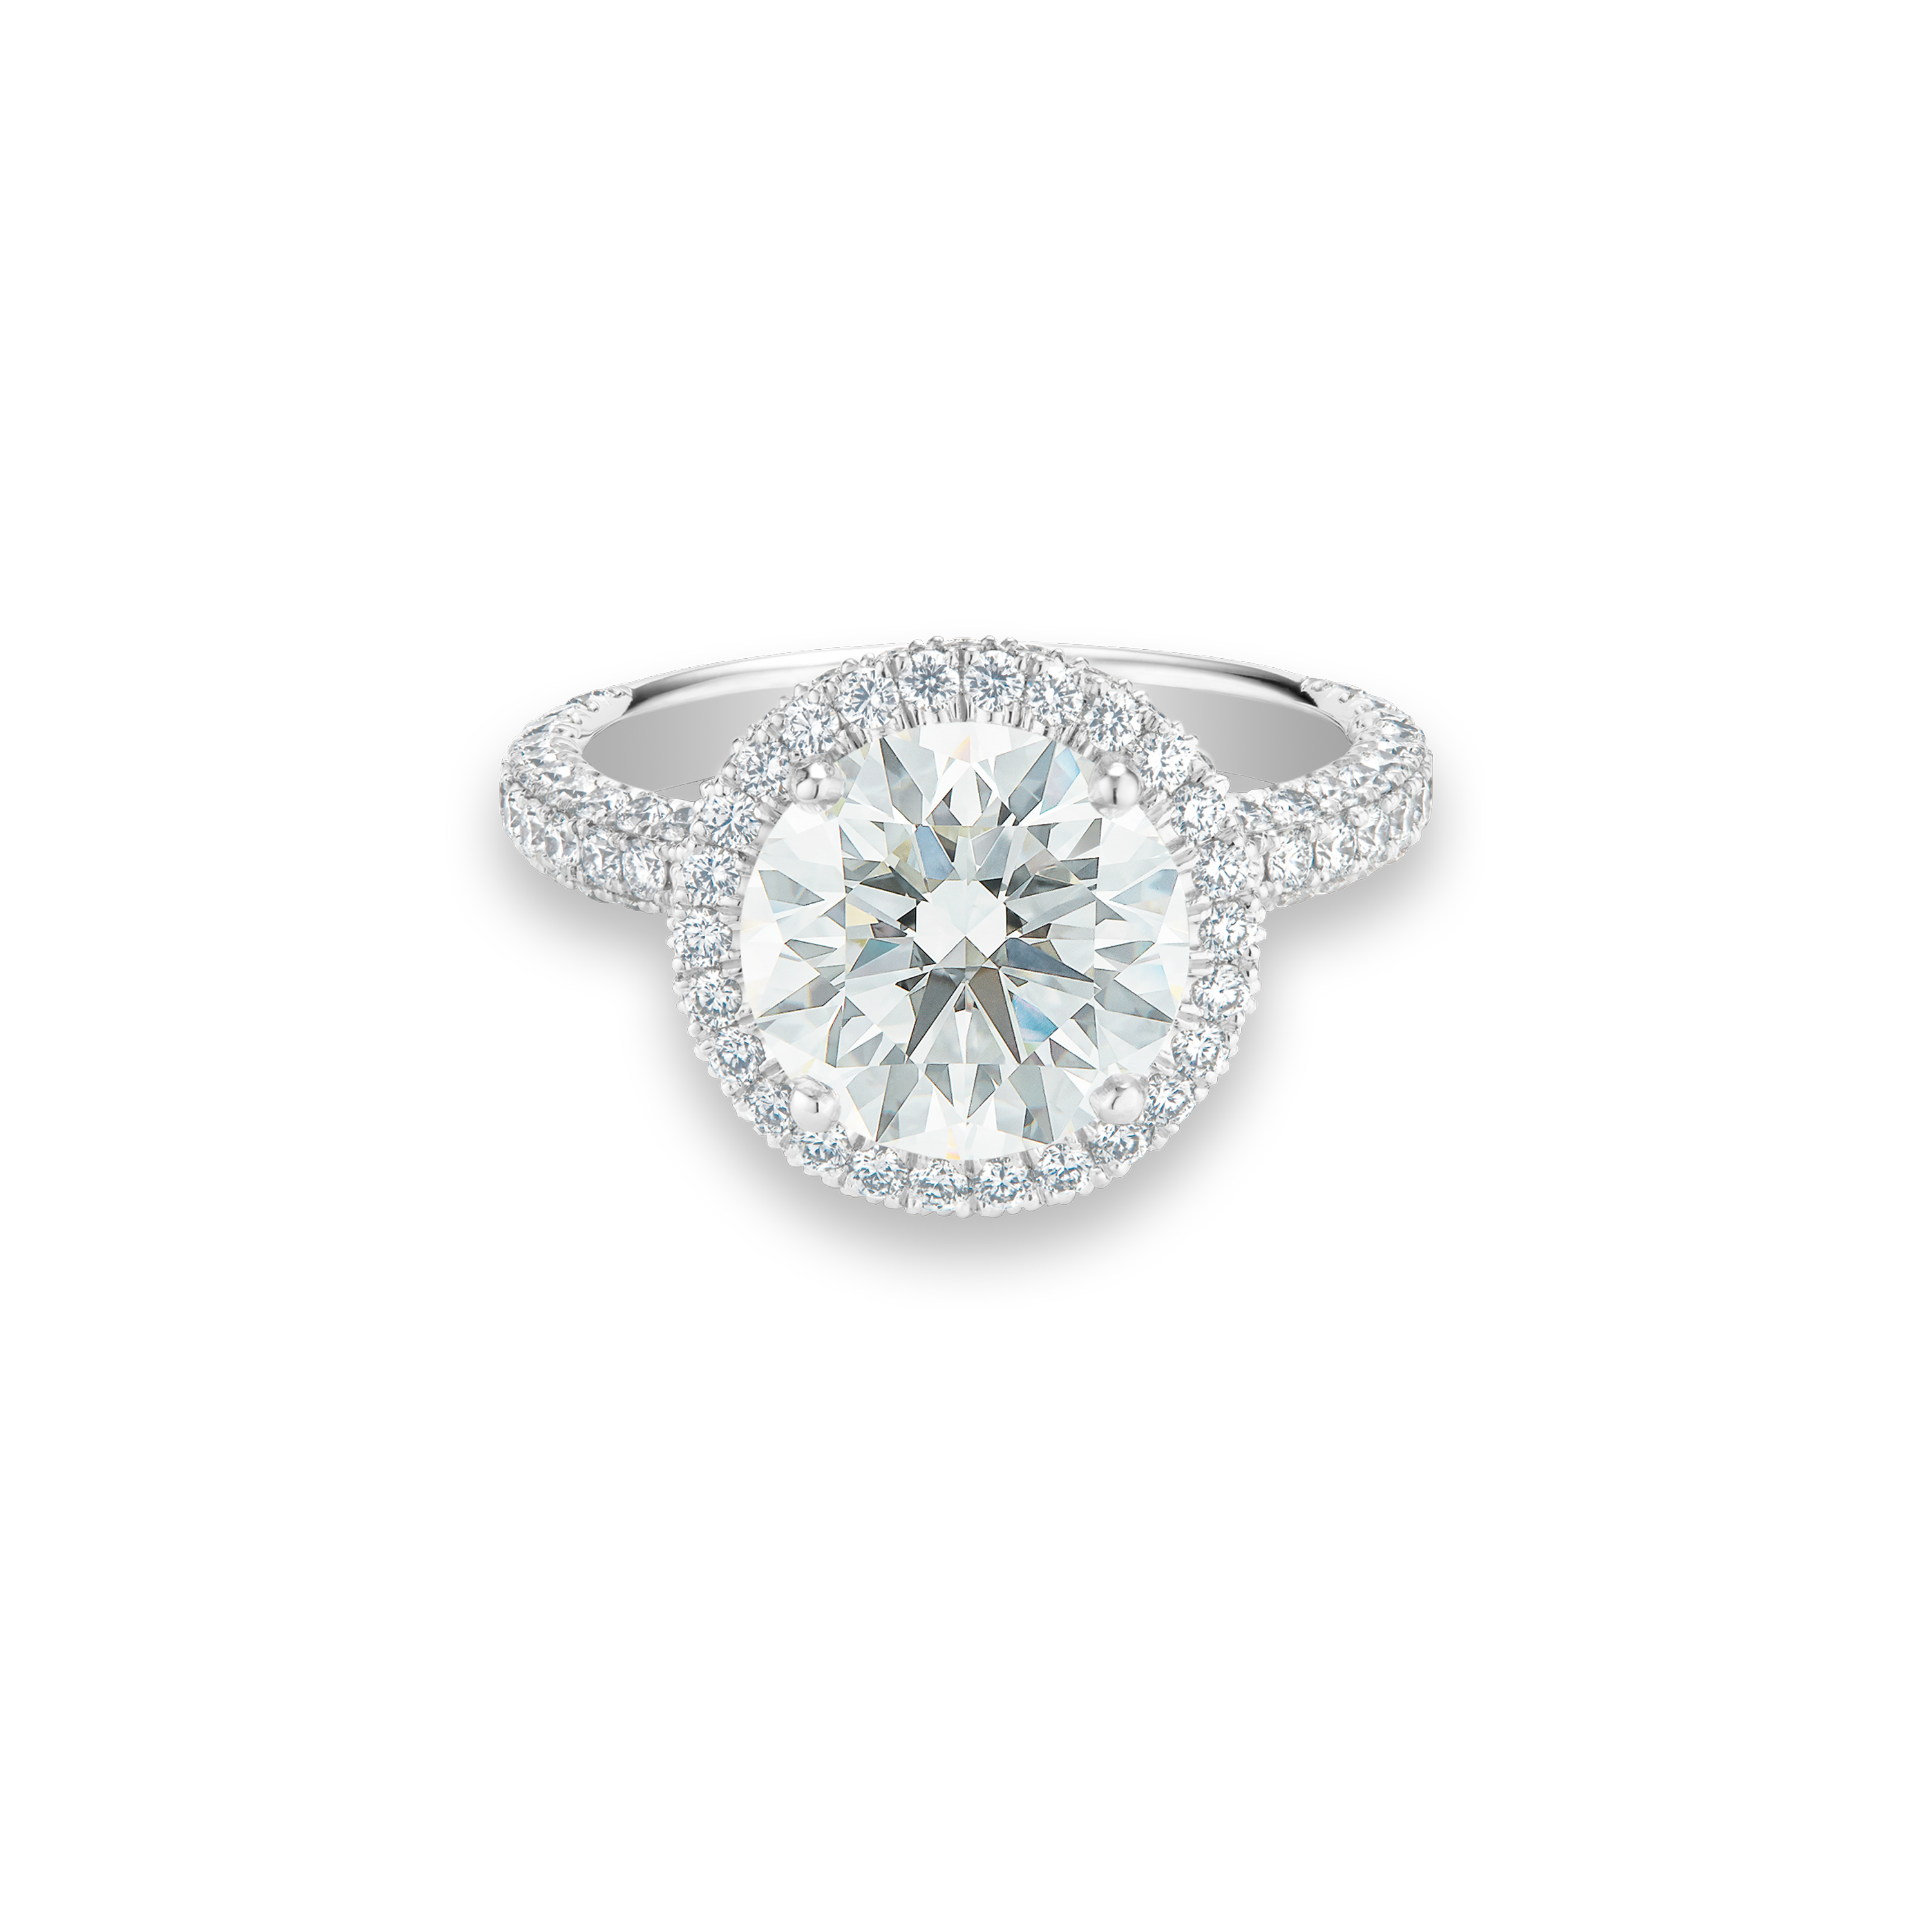 Aura round brilliant diamond ring, image 1